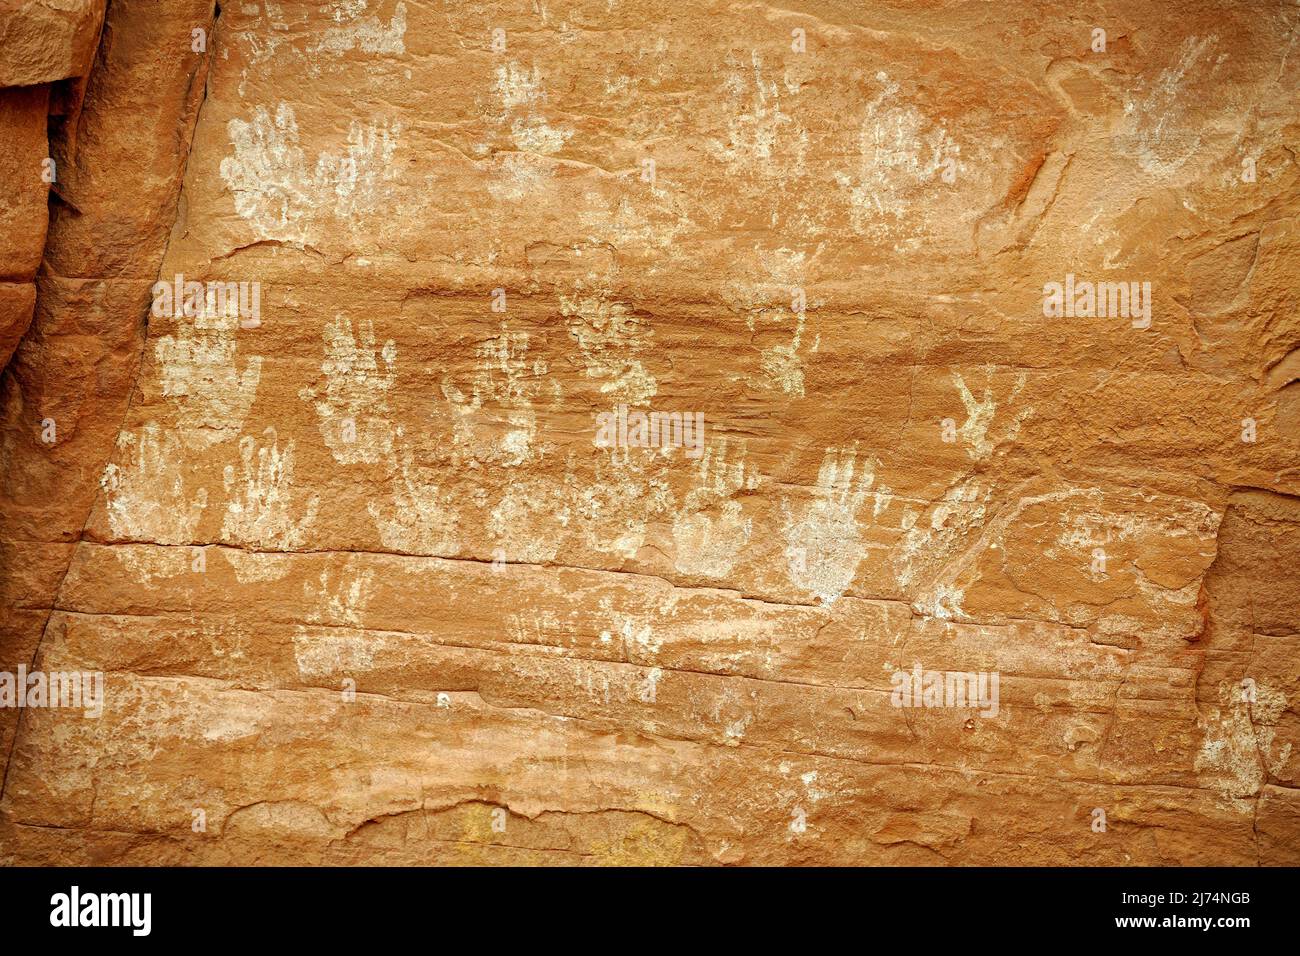 Handdrucke und Gemälde der Indianer im Mystery Valley, ca. 1500 Jahre alt, USA, Arizona Stockfoto